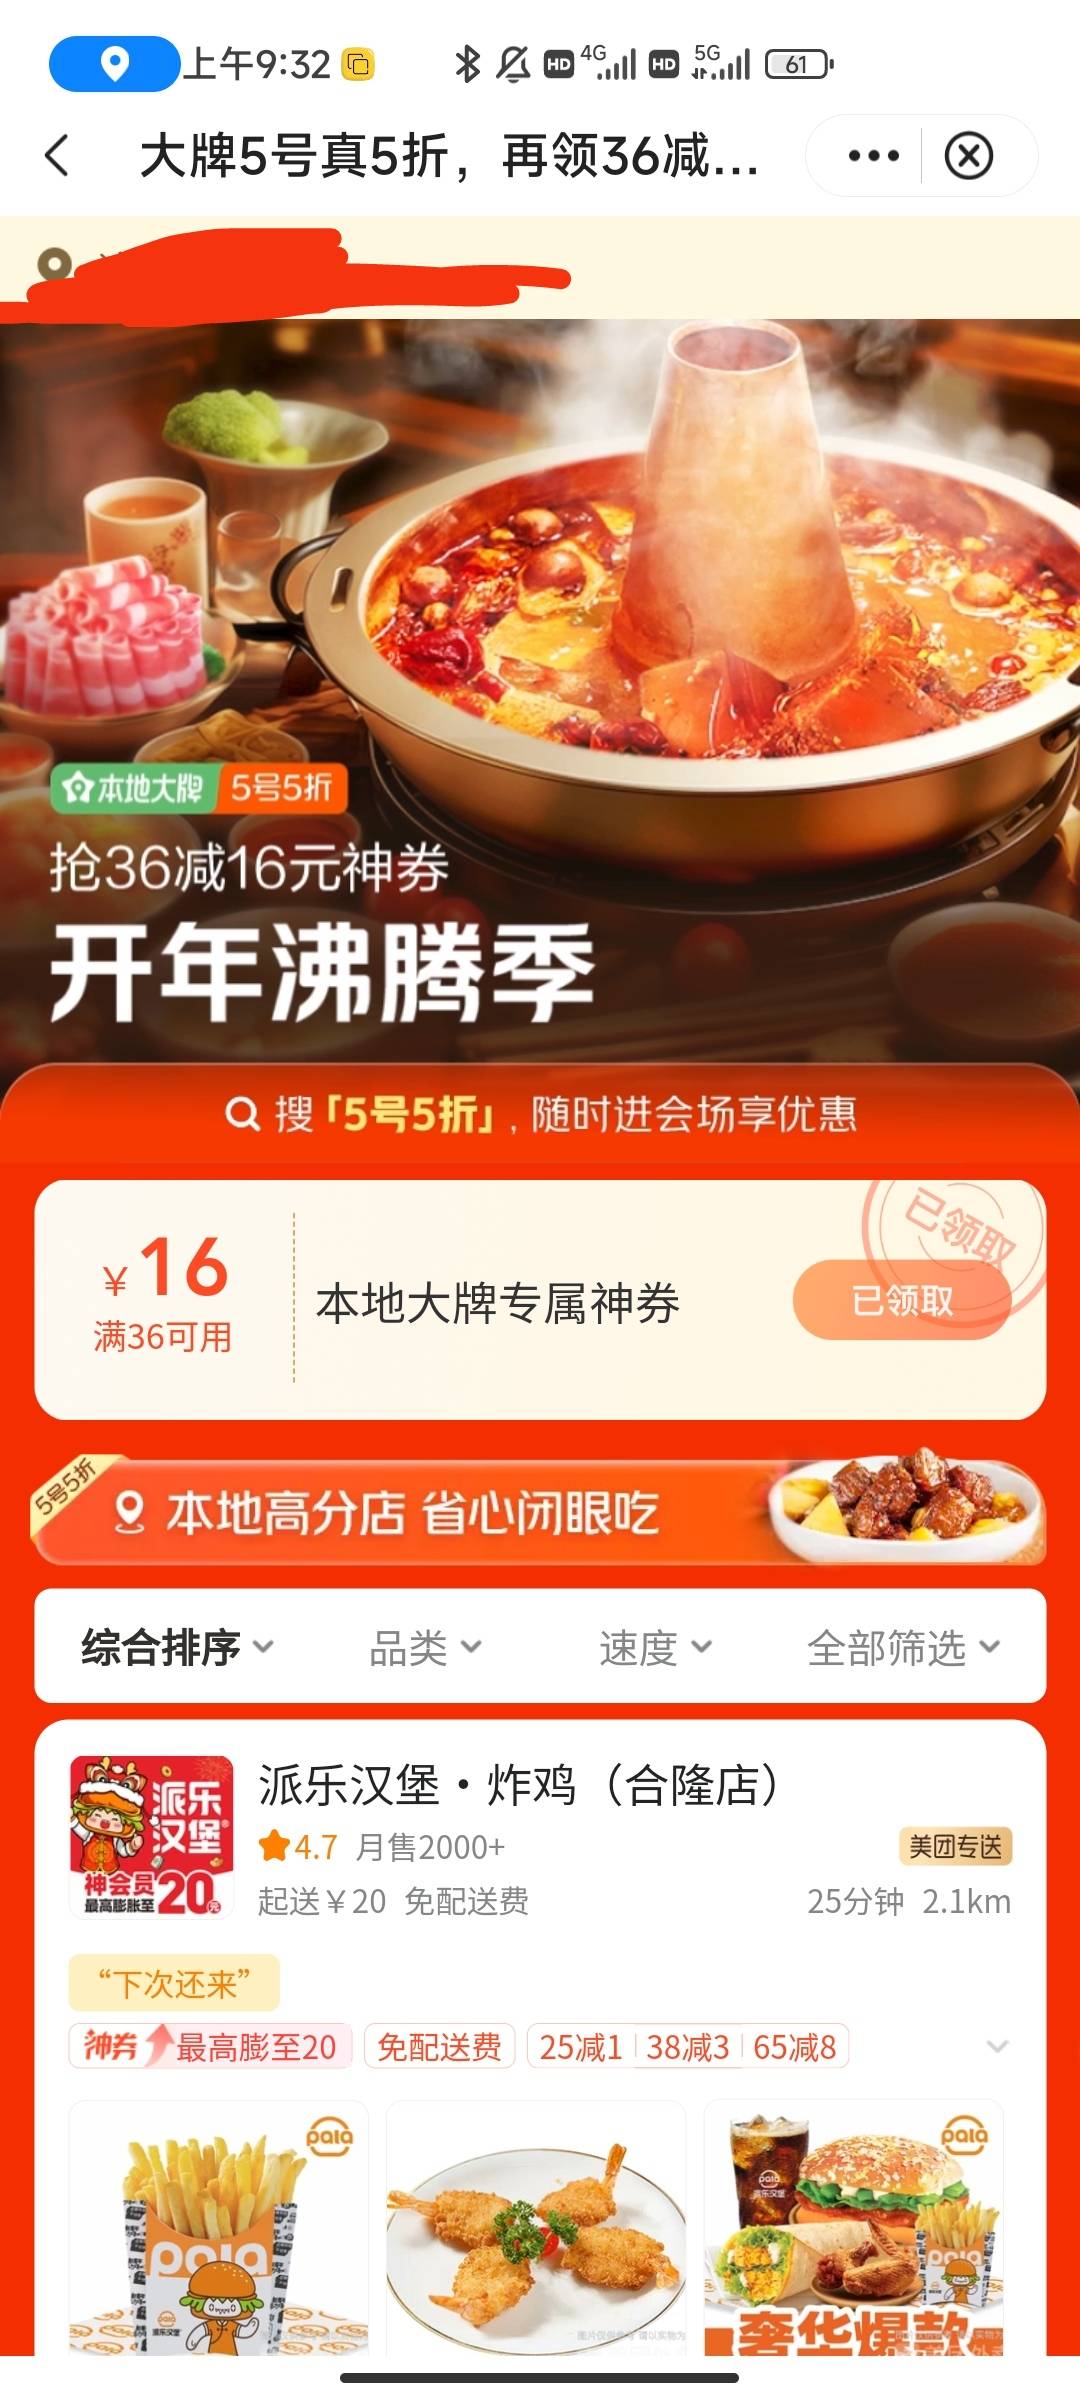 中国银行app，生活，选美团，今天有36_16的券。没吃饭的去啊，建行生活已经是过去式了59 / 作者:半夏如果 / 